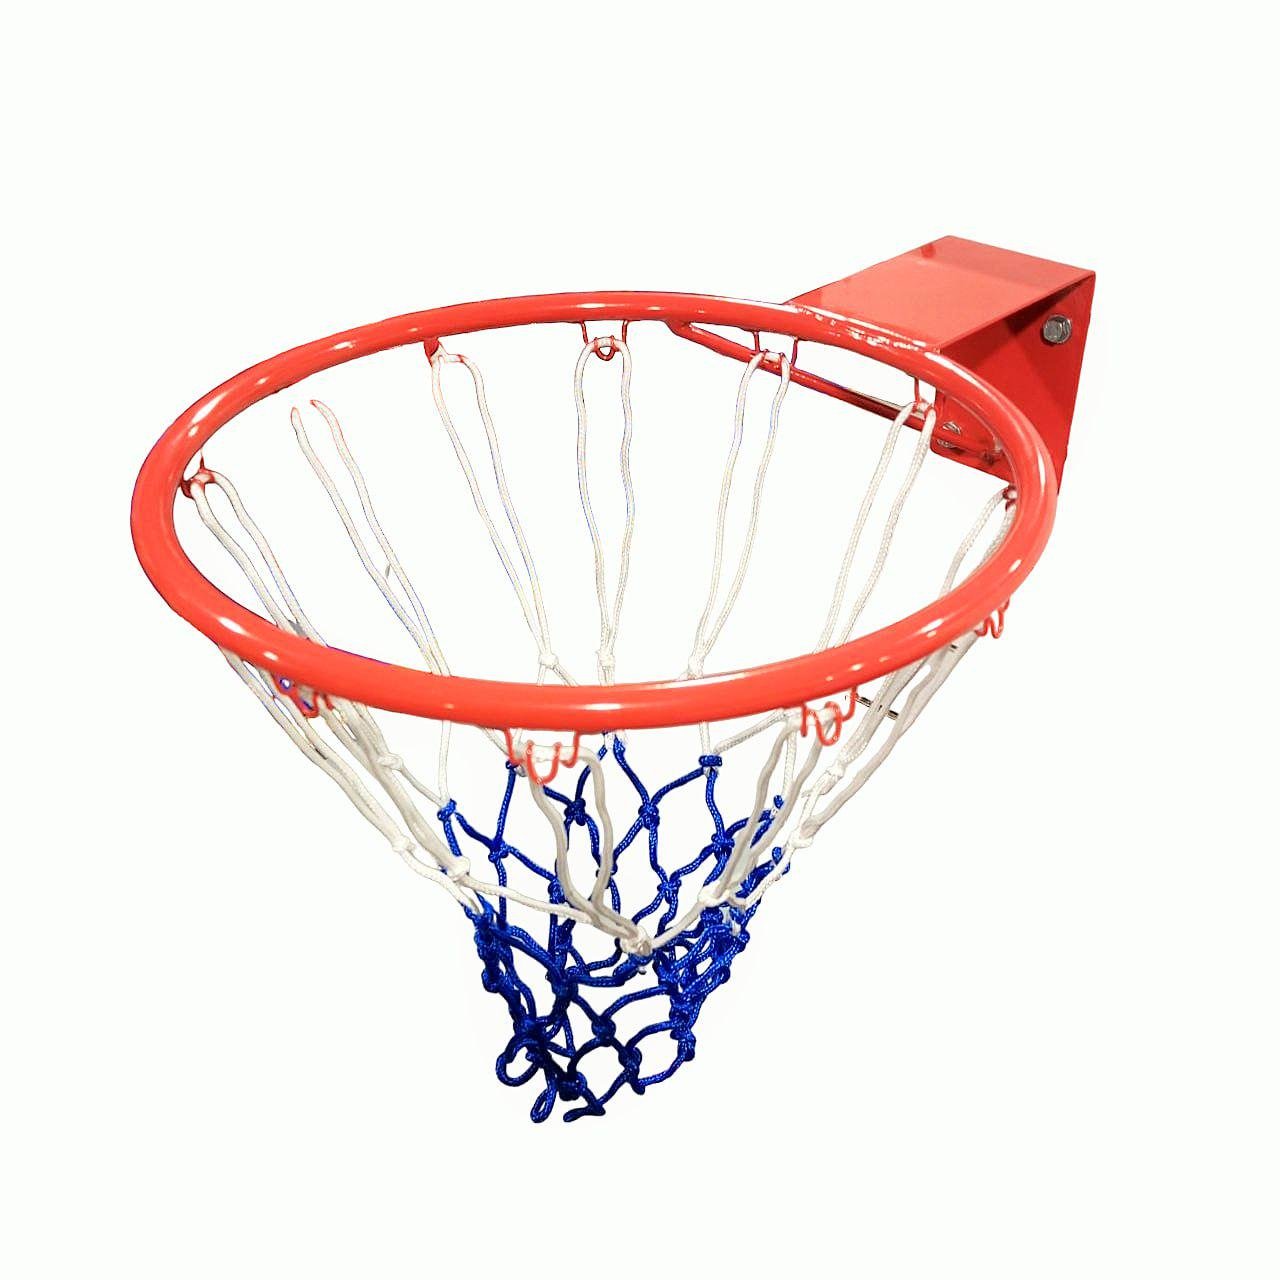 Кільце баскетбольне Bax №7 45 см з сіткою (77093c)